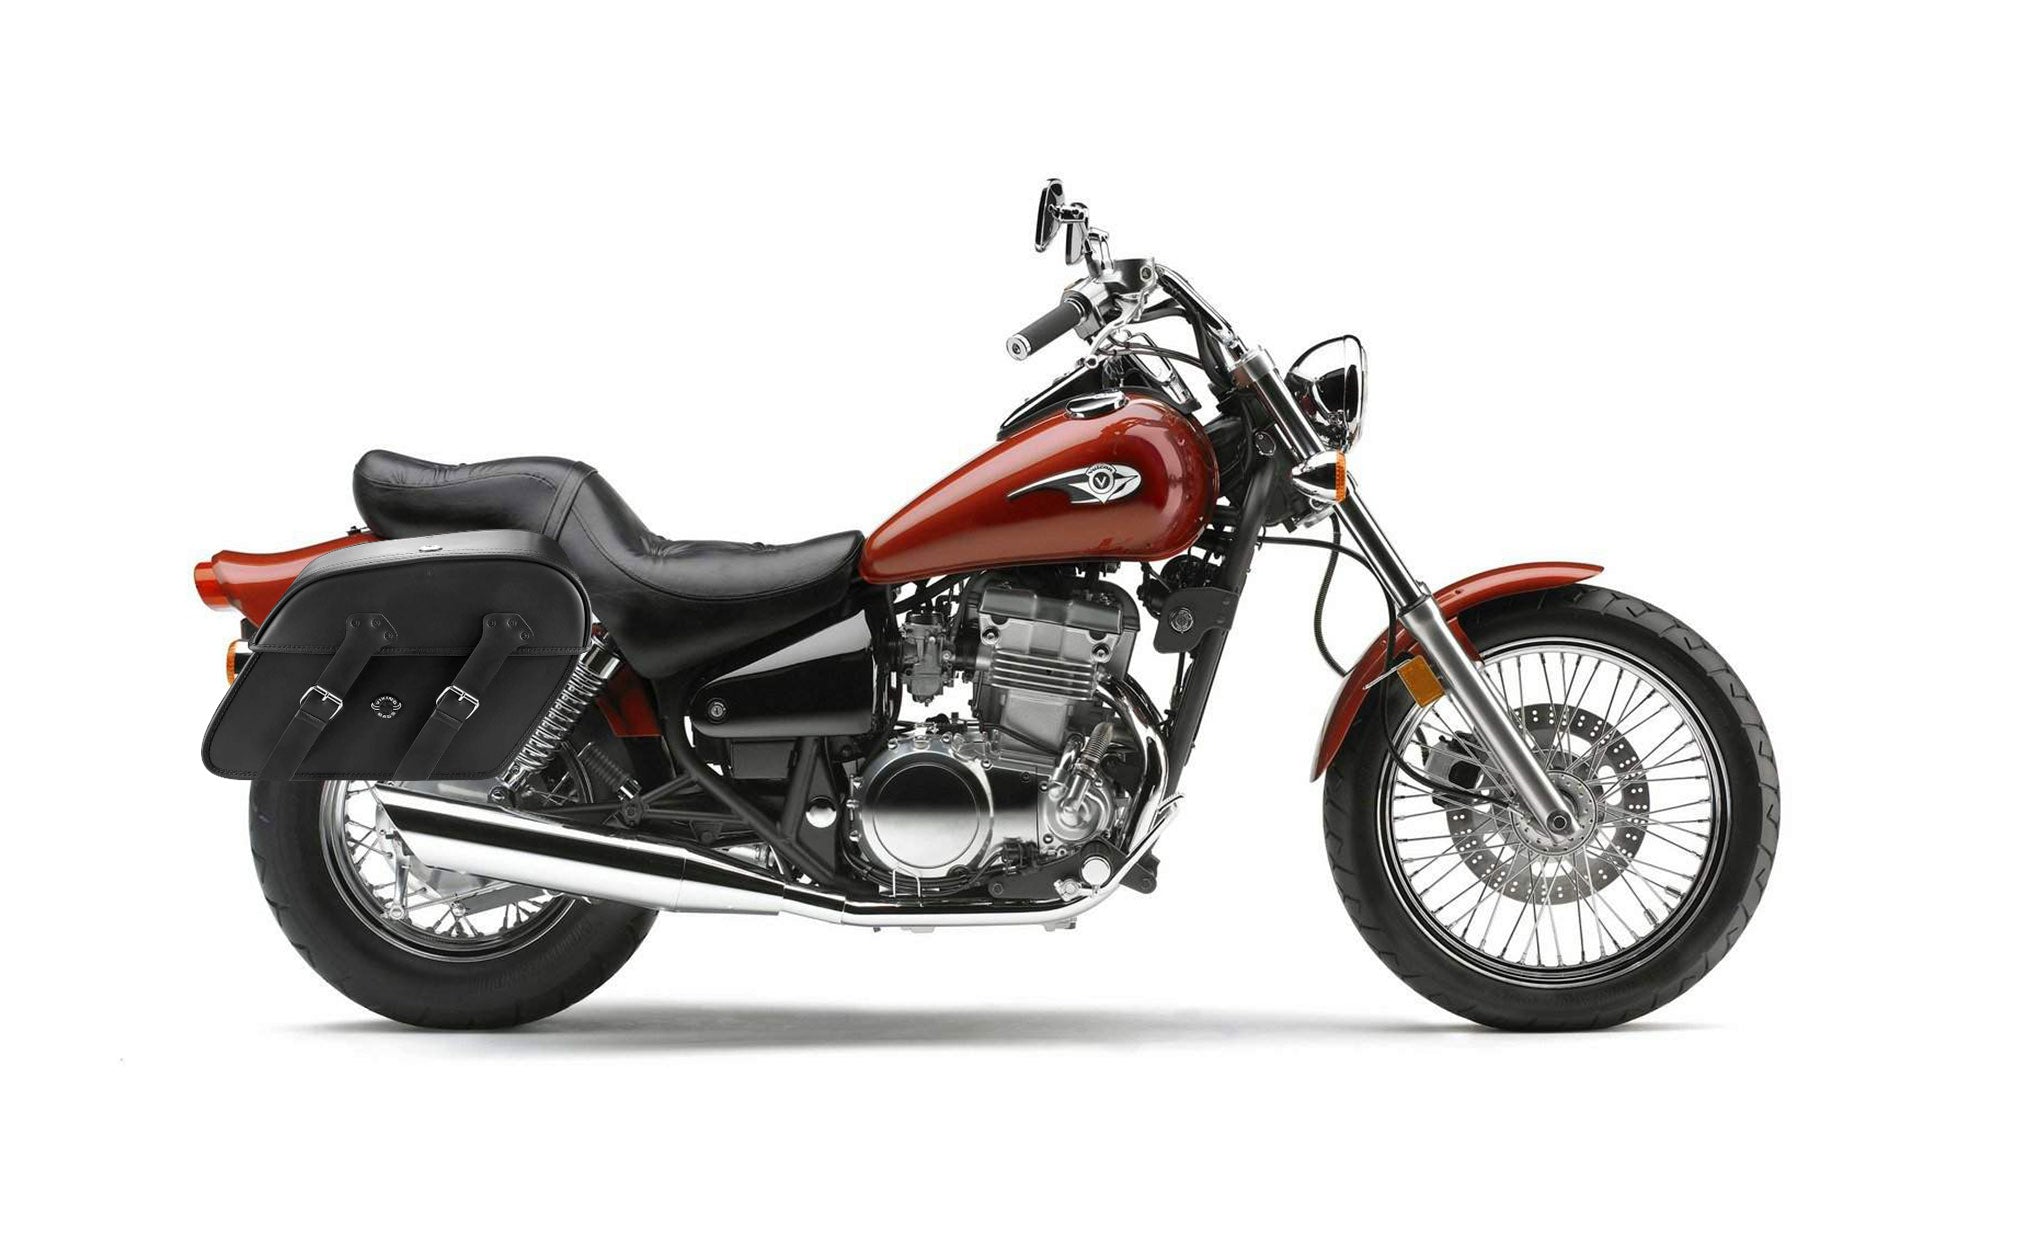 Viking Raven Extra Large Kawasaki Vulcan 500 En500 Leather Motorcycle Saddlebags on Bike Photo @expand